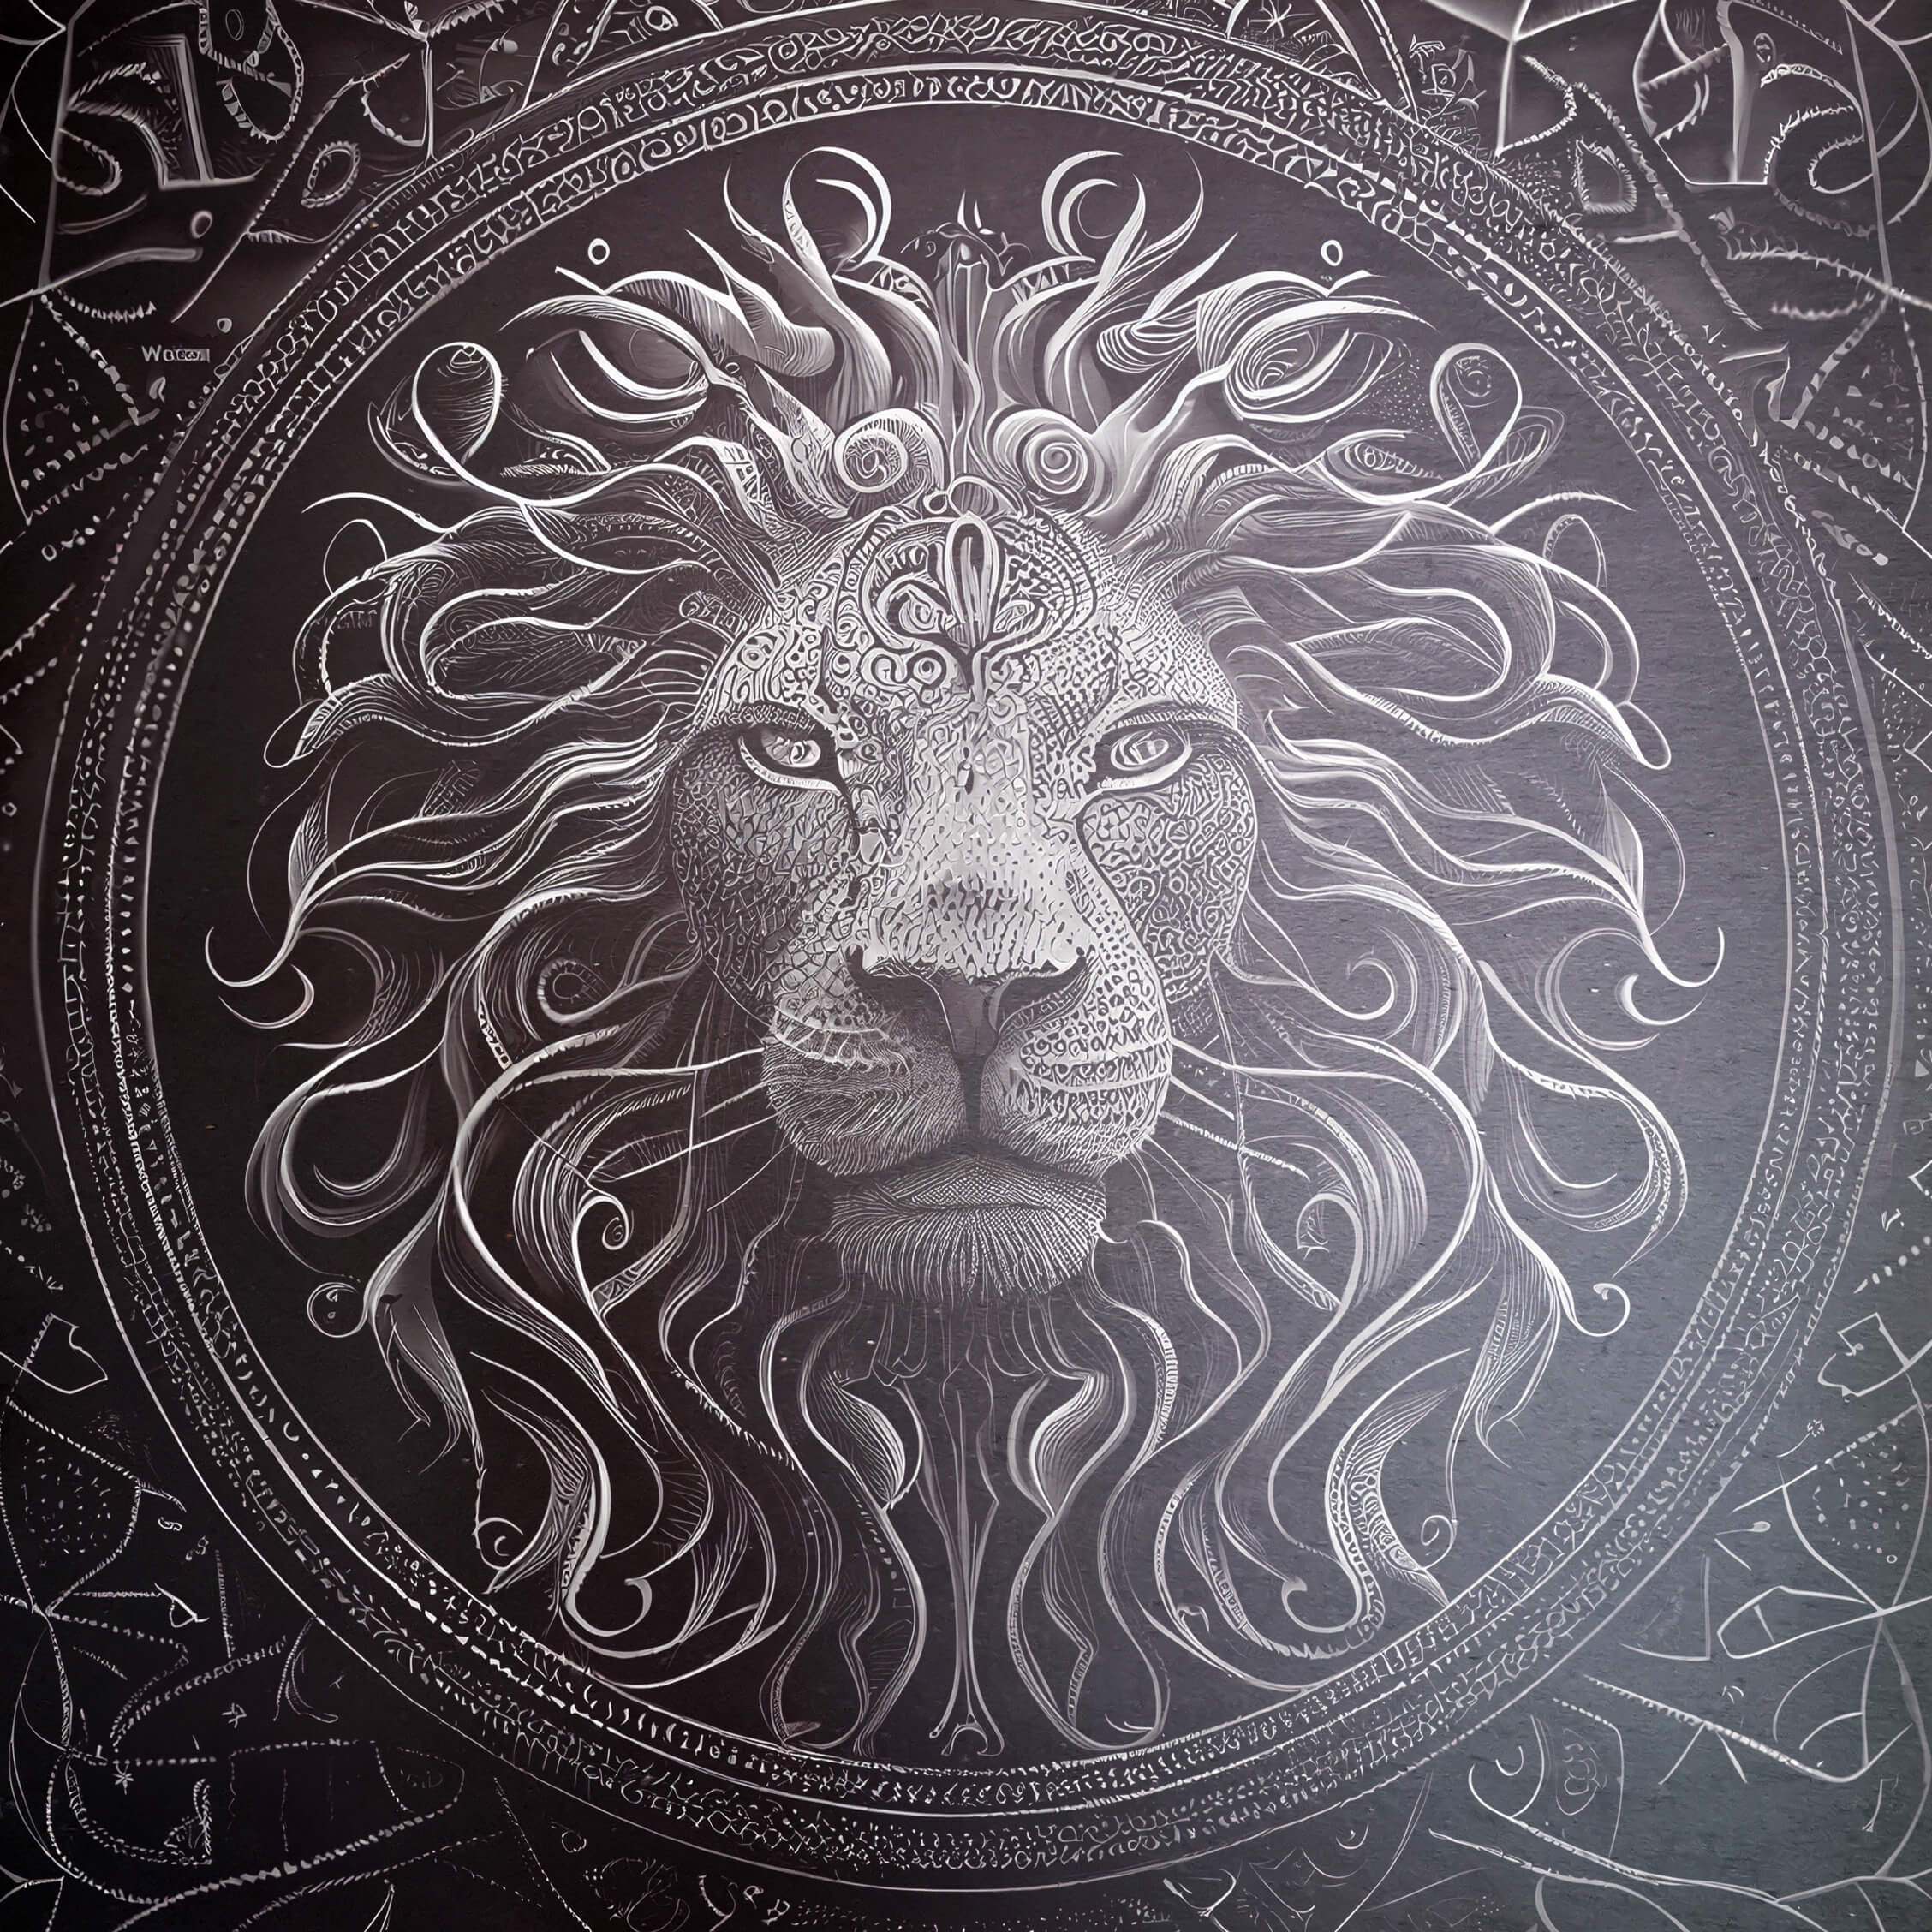 La realeza del león